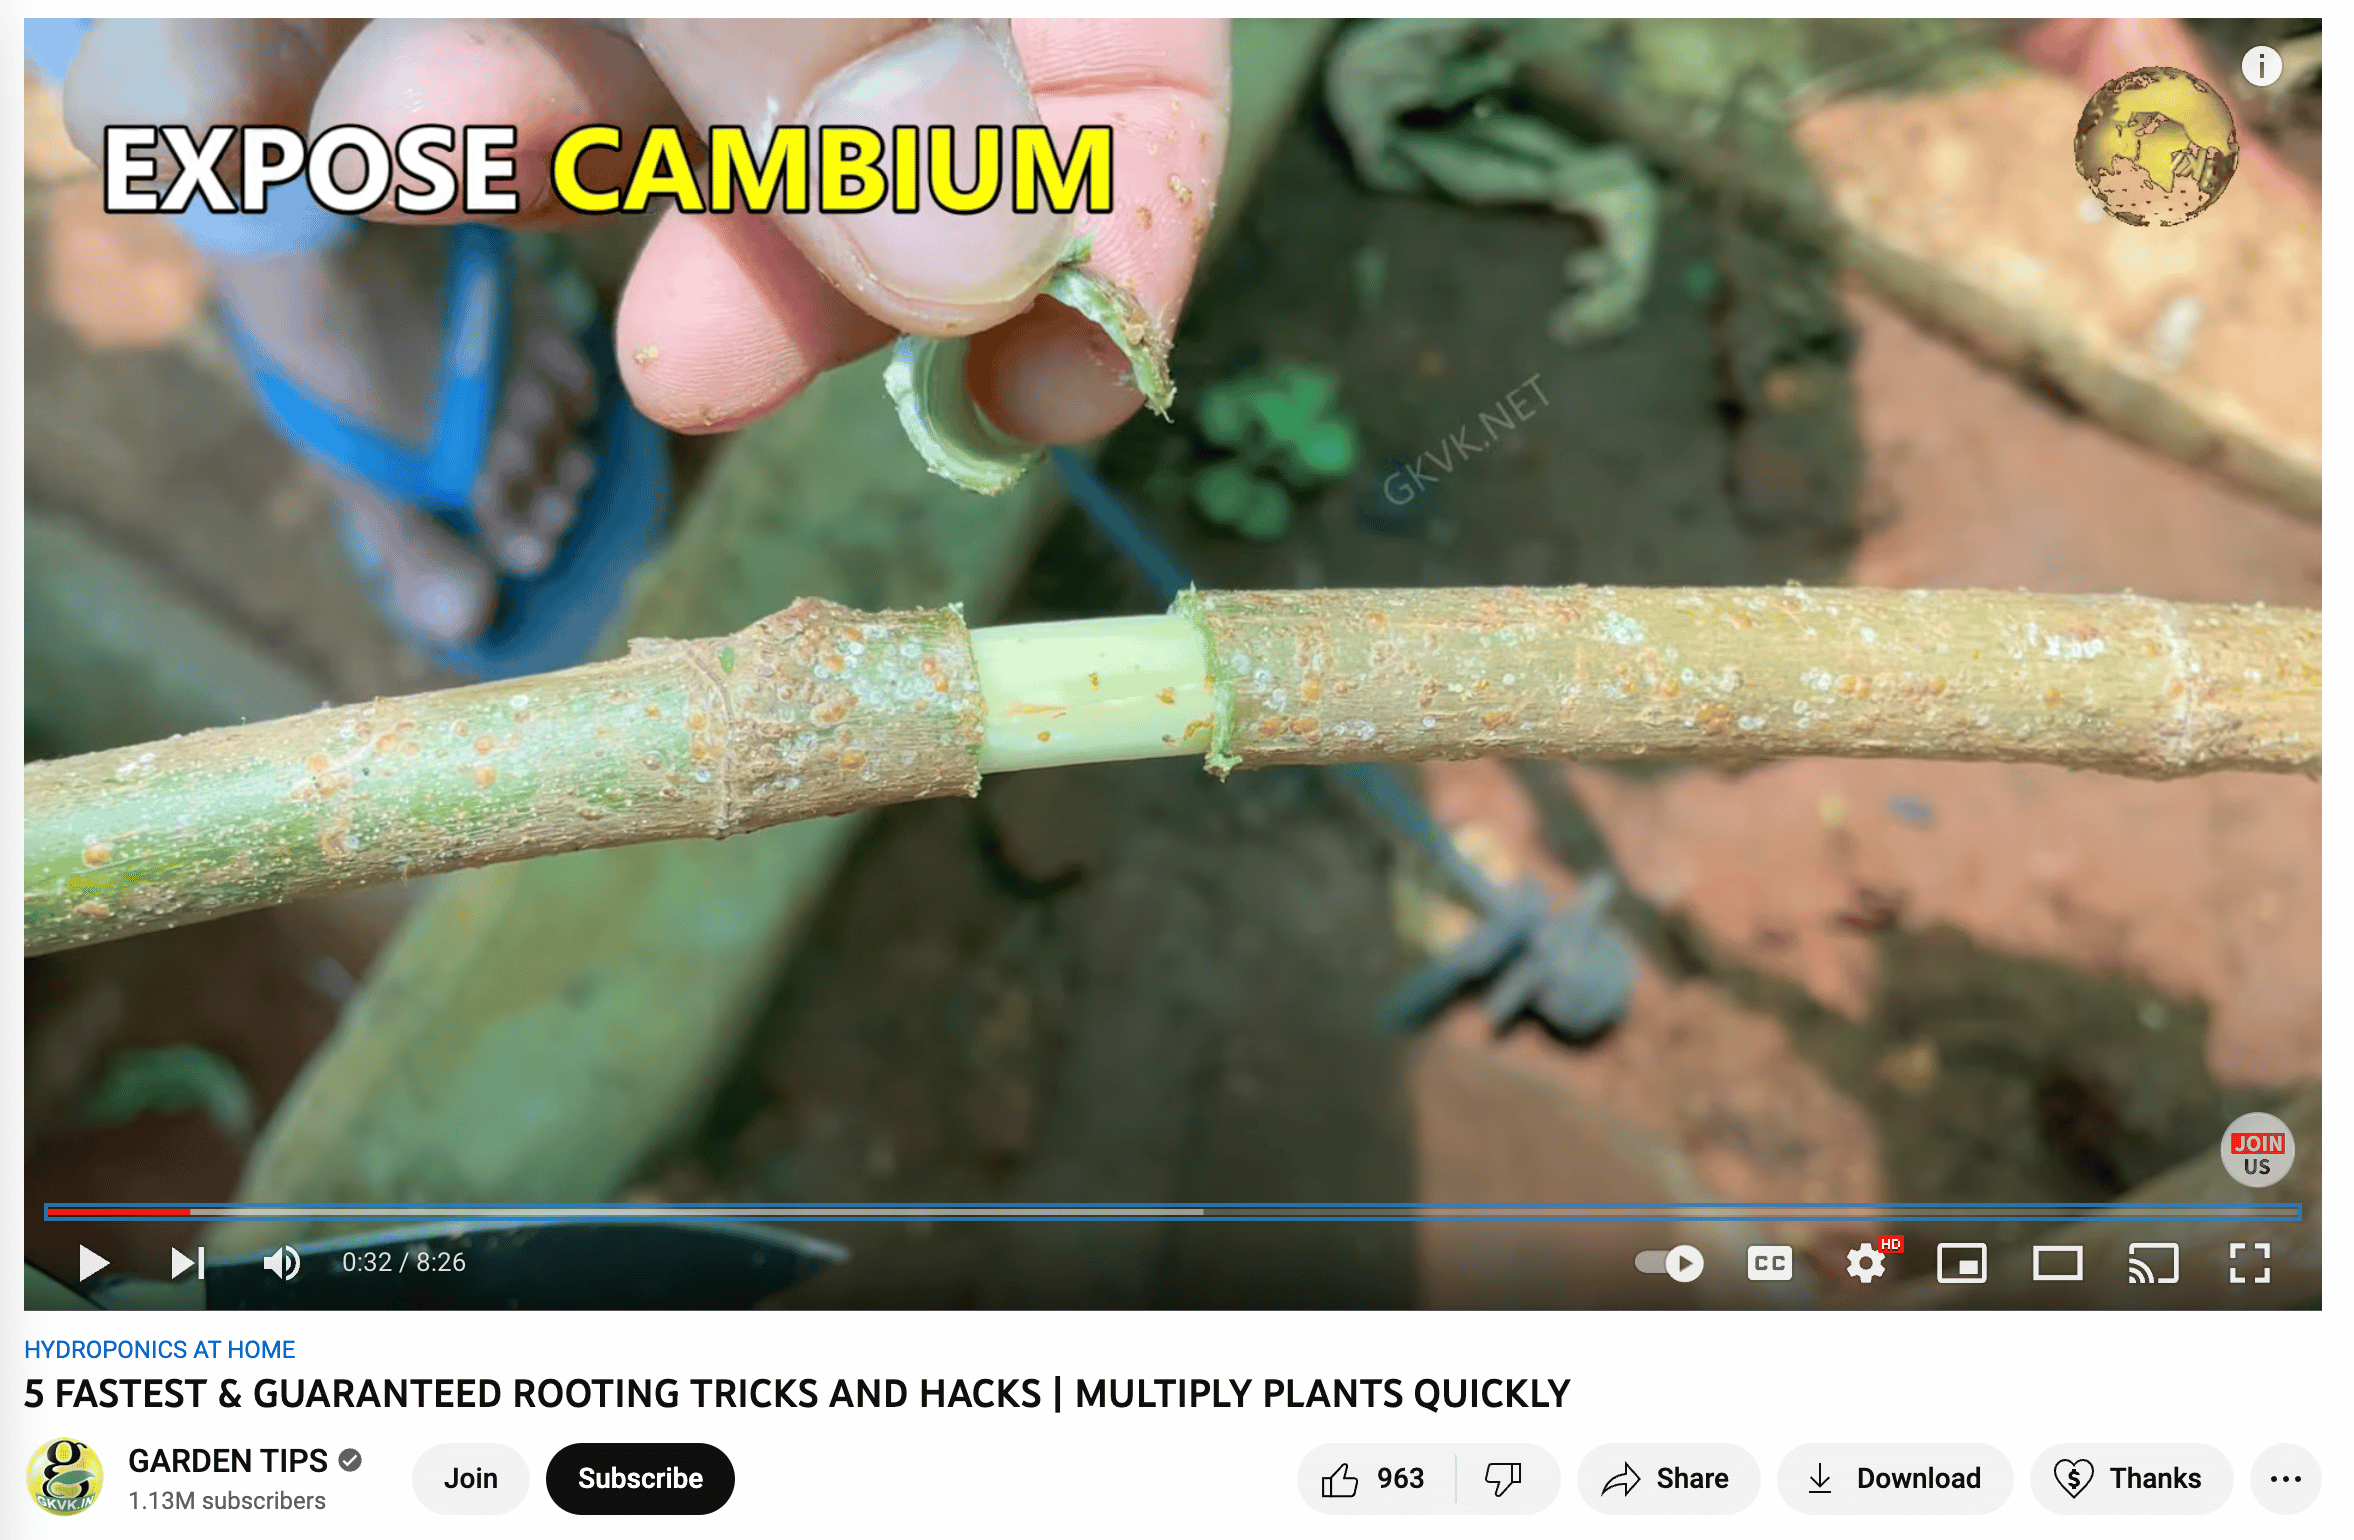 Vídeo del canal de Horticultura en YouTube que muestra cómo exponer el cámbium